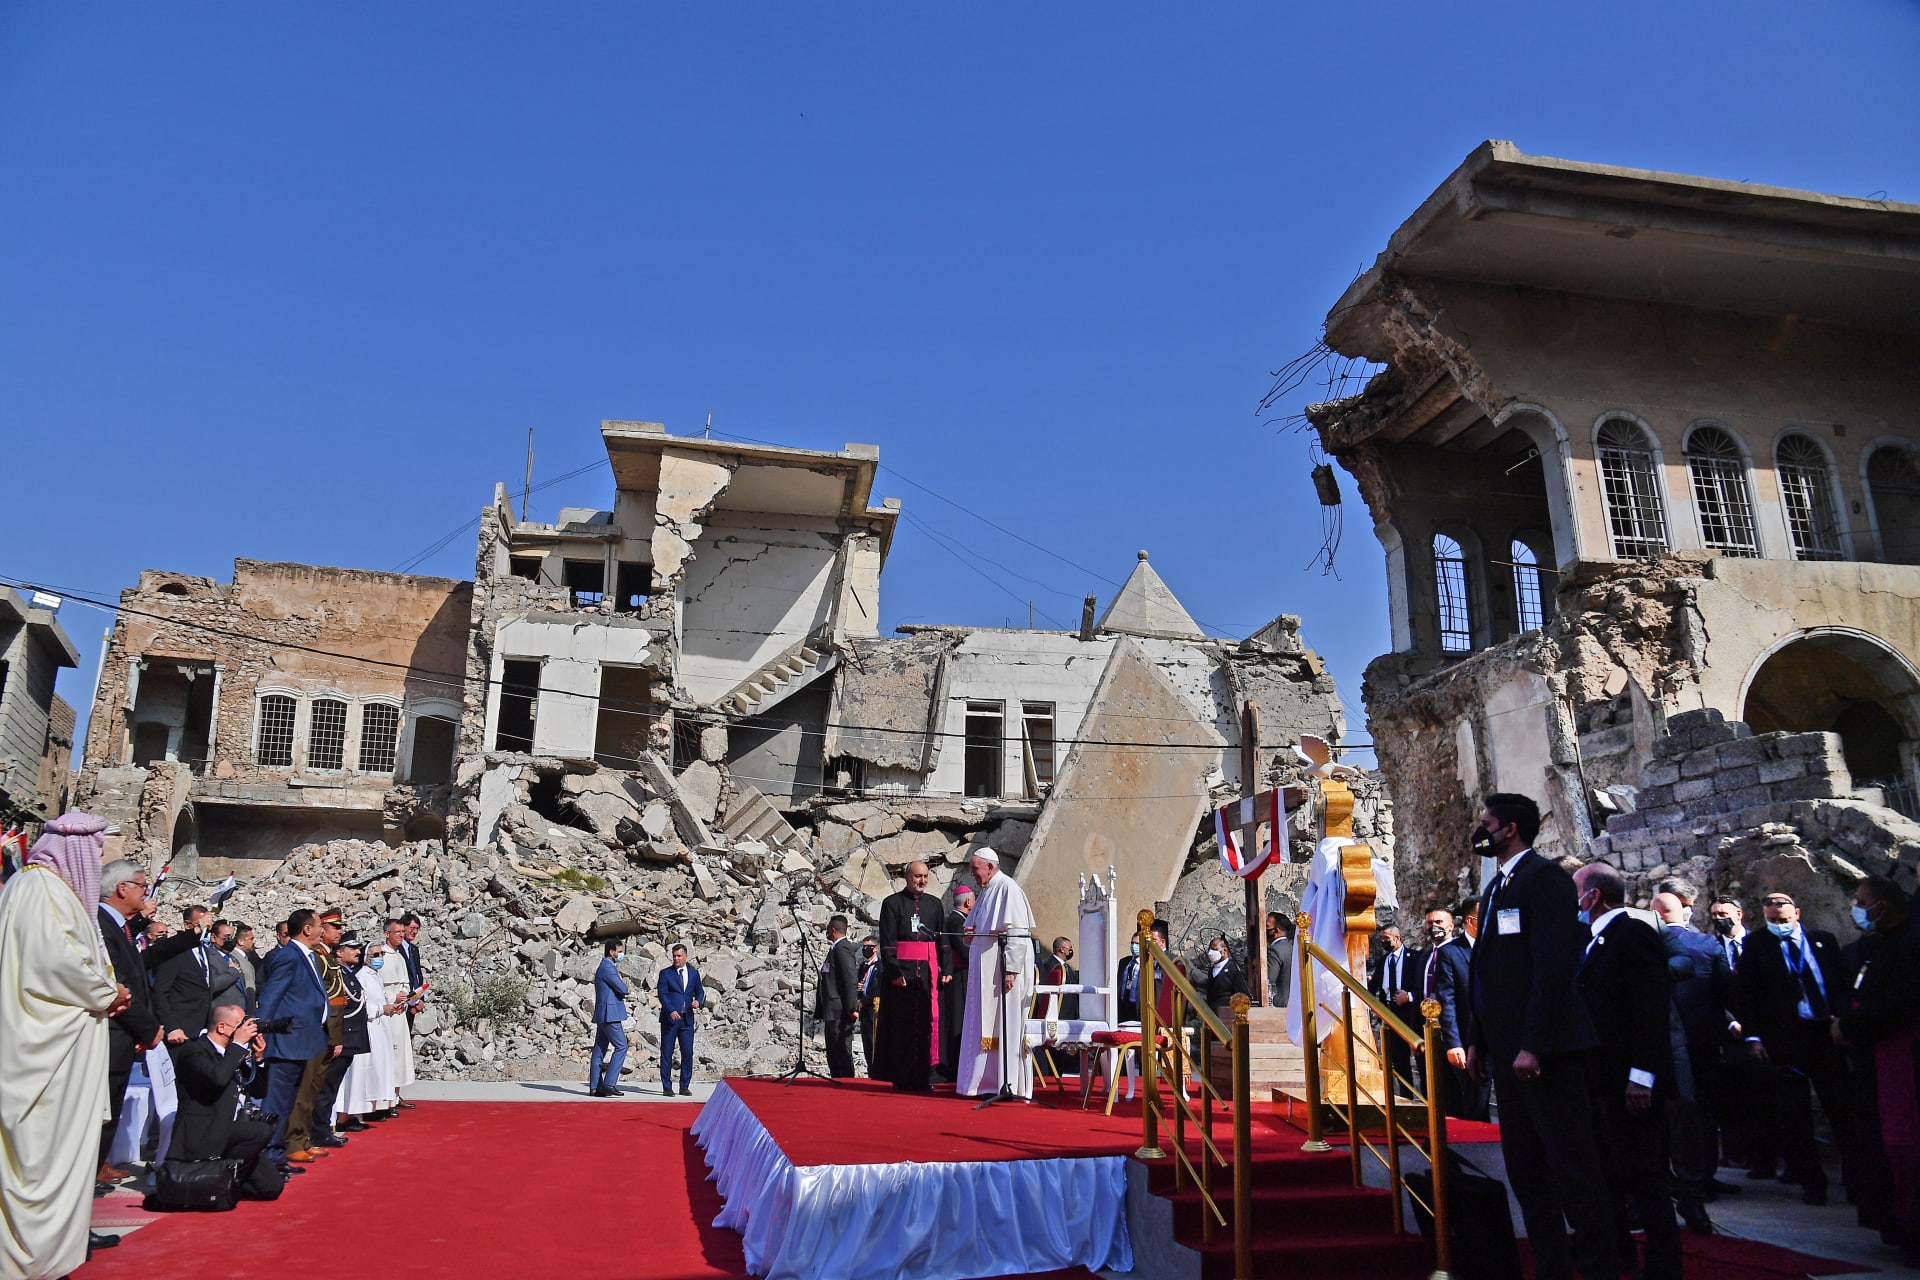 مشهد مختلف عن أي مكان زاره البابا فرنسيس بالعراق.. هكذا كانت أجواء كنيسة قره قوش التي دمرها داعش